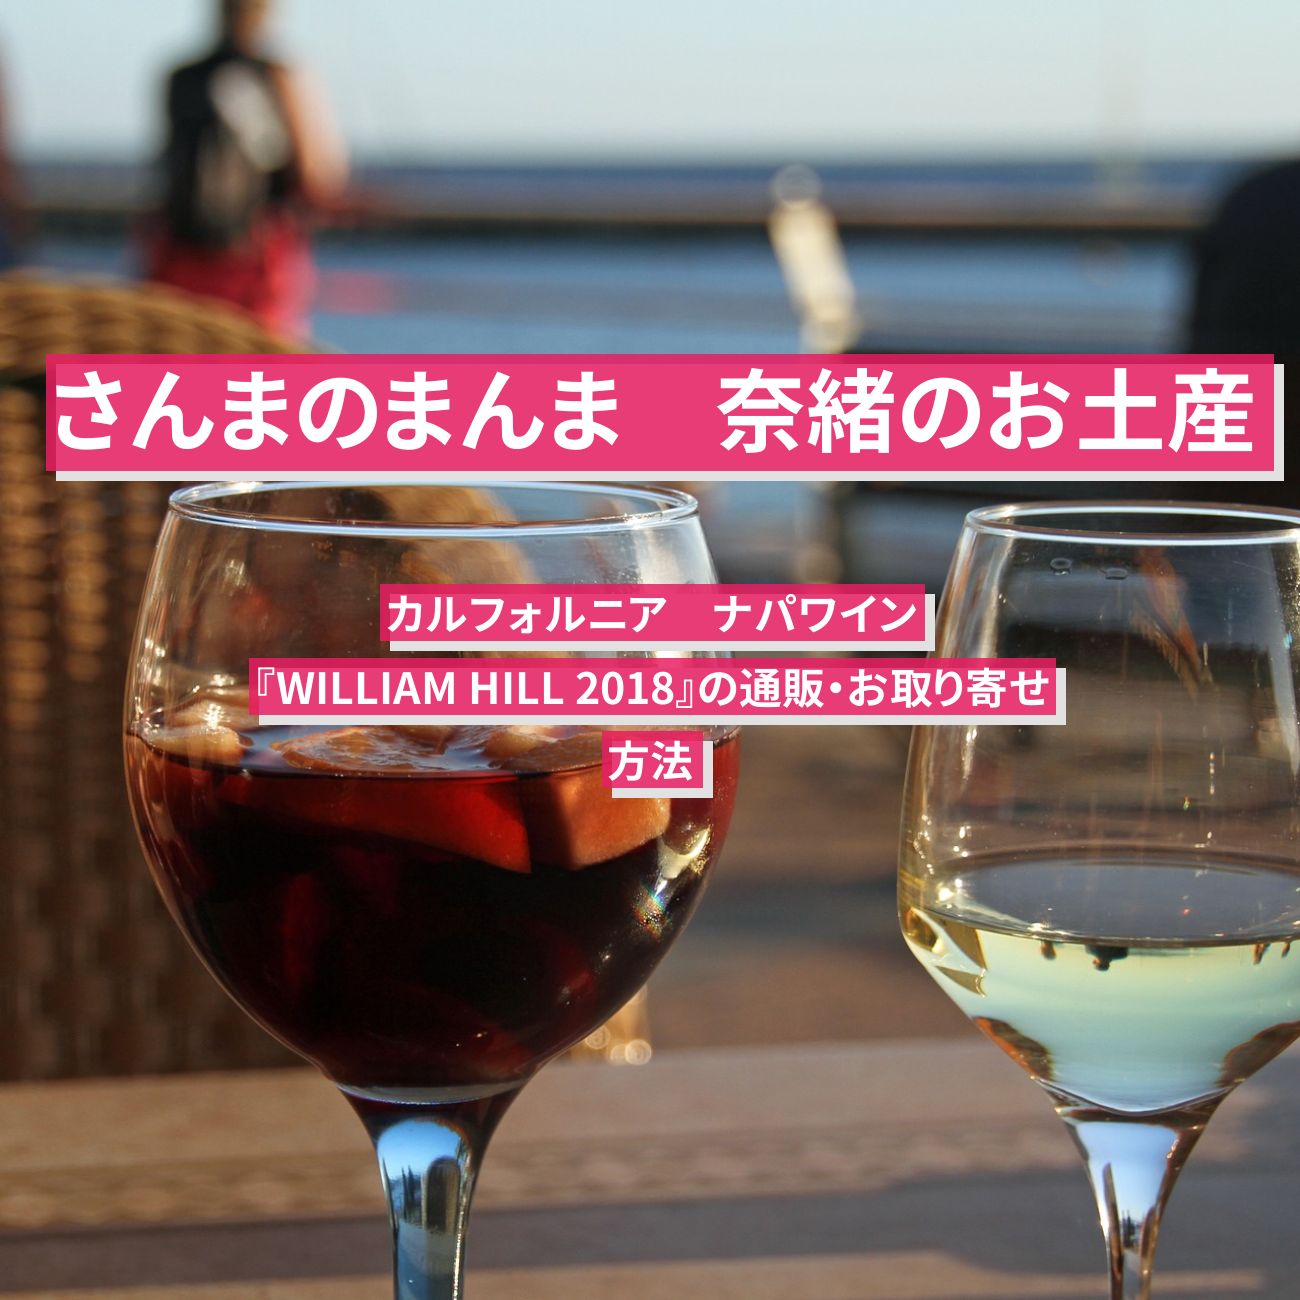 【さんまのまんま】奈緒のお土産のワイン『WILLIAM HILL 2018』カルフォルニアのナパワインの通販・お取り寄せ方法